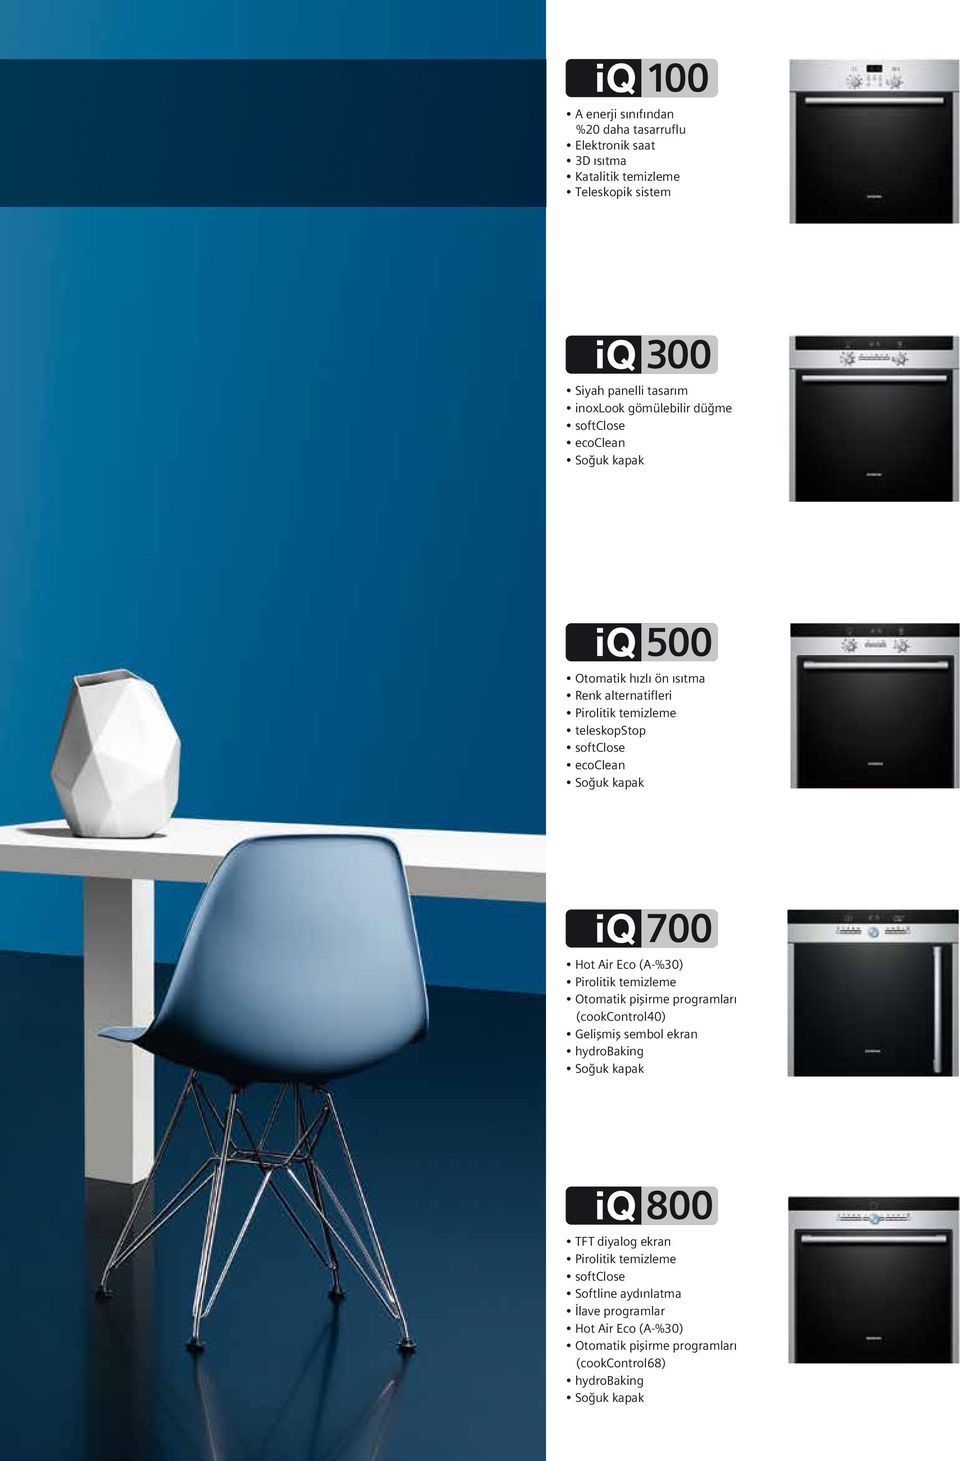 Air Eco (A-%30) Pirolitik temizleme Otomatik pişirme programları (cookcontrol40) Gelişmiş sembol ekran hydrobaking Soğuk kapak 800 TFT diyalog ekran